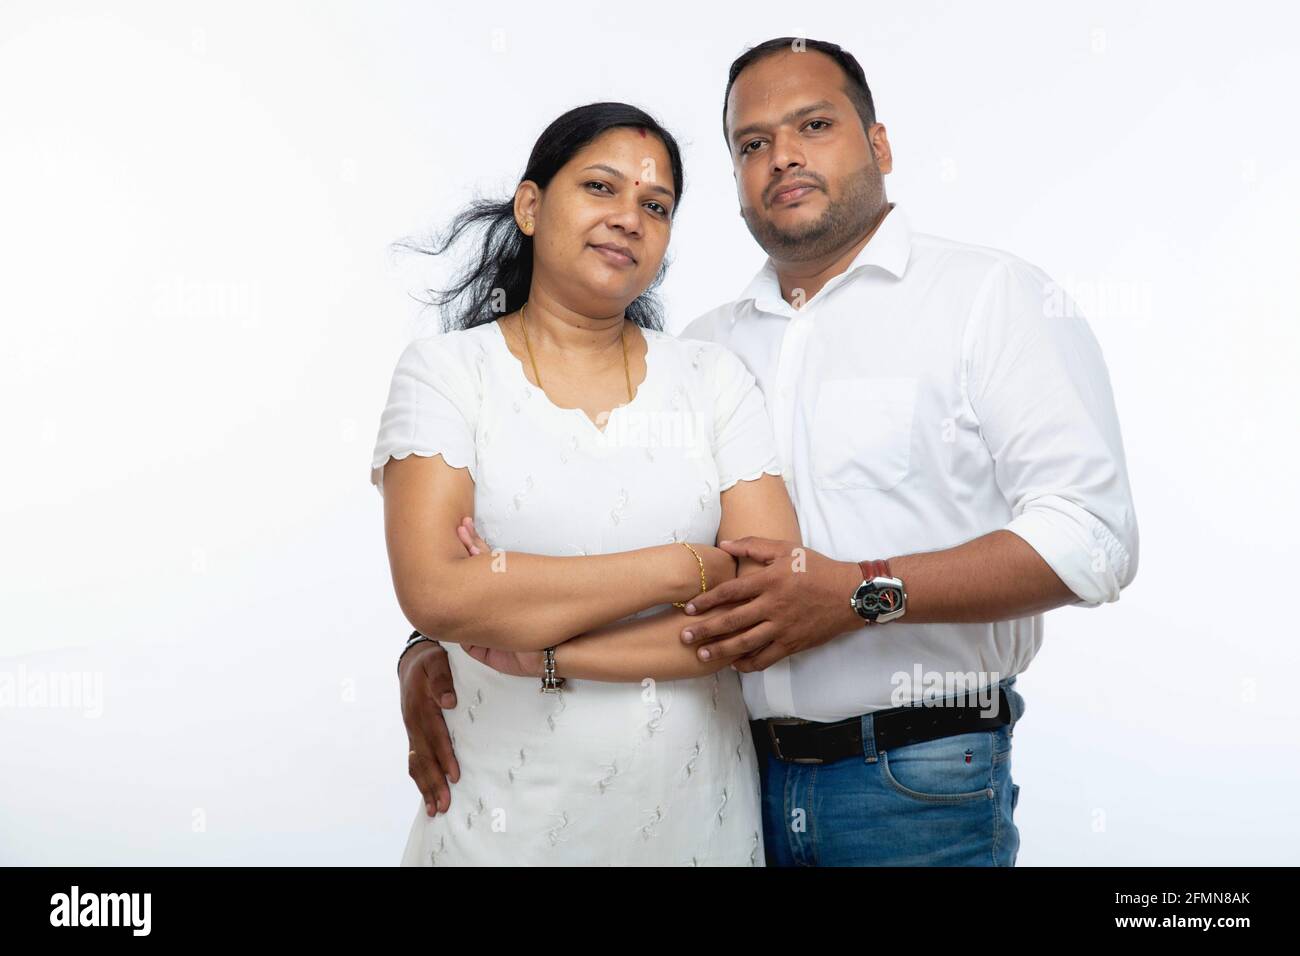 Coppie indiane, ritratto di felice coppia indiana isolato su sfondo bianco Foto Stock